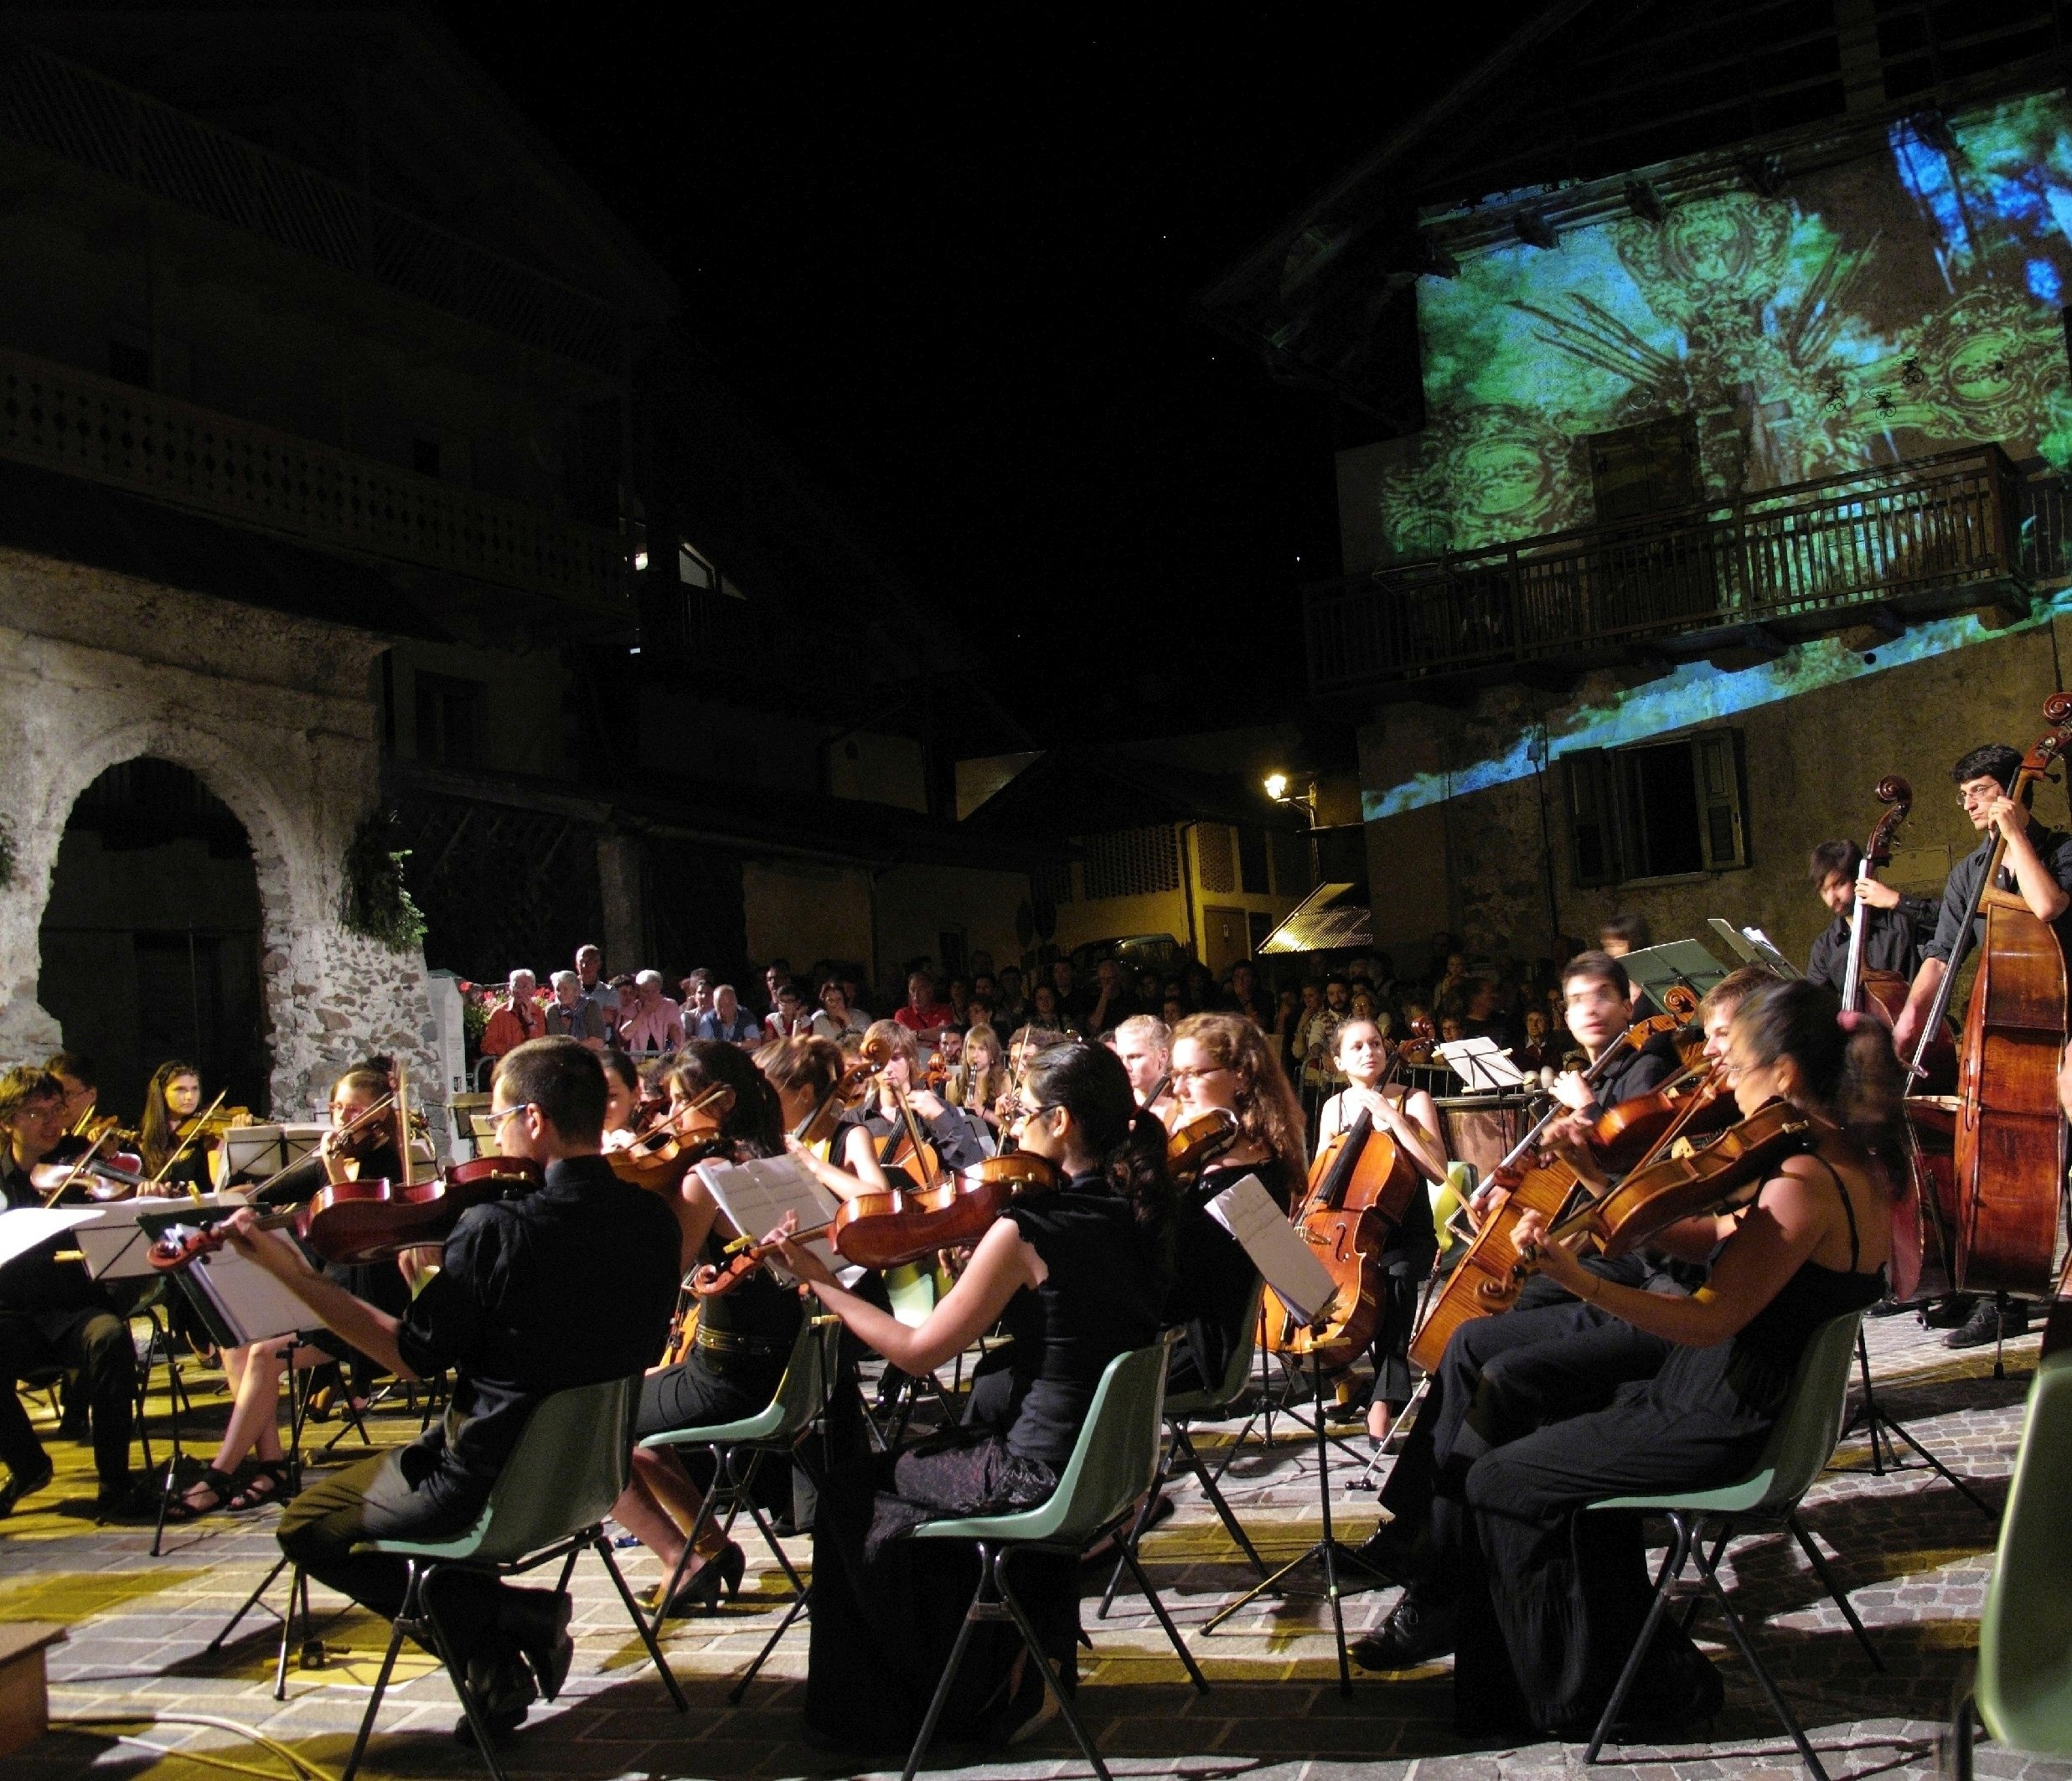 Musica&Teatro – Al via la 10° edizione di Mezzano Romantica. Spettacoli dal 10 luglio al 5 settembre 2020